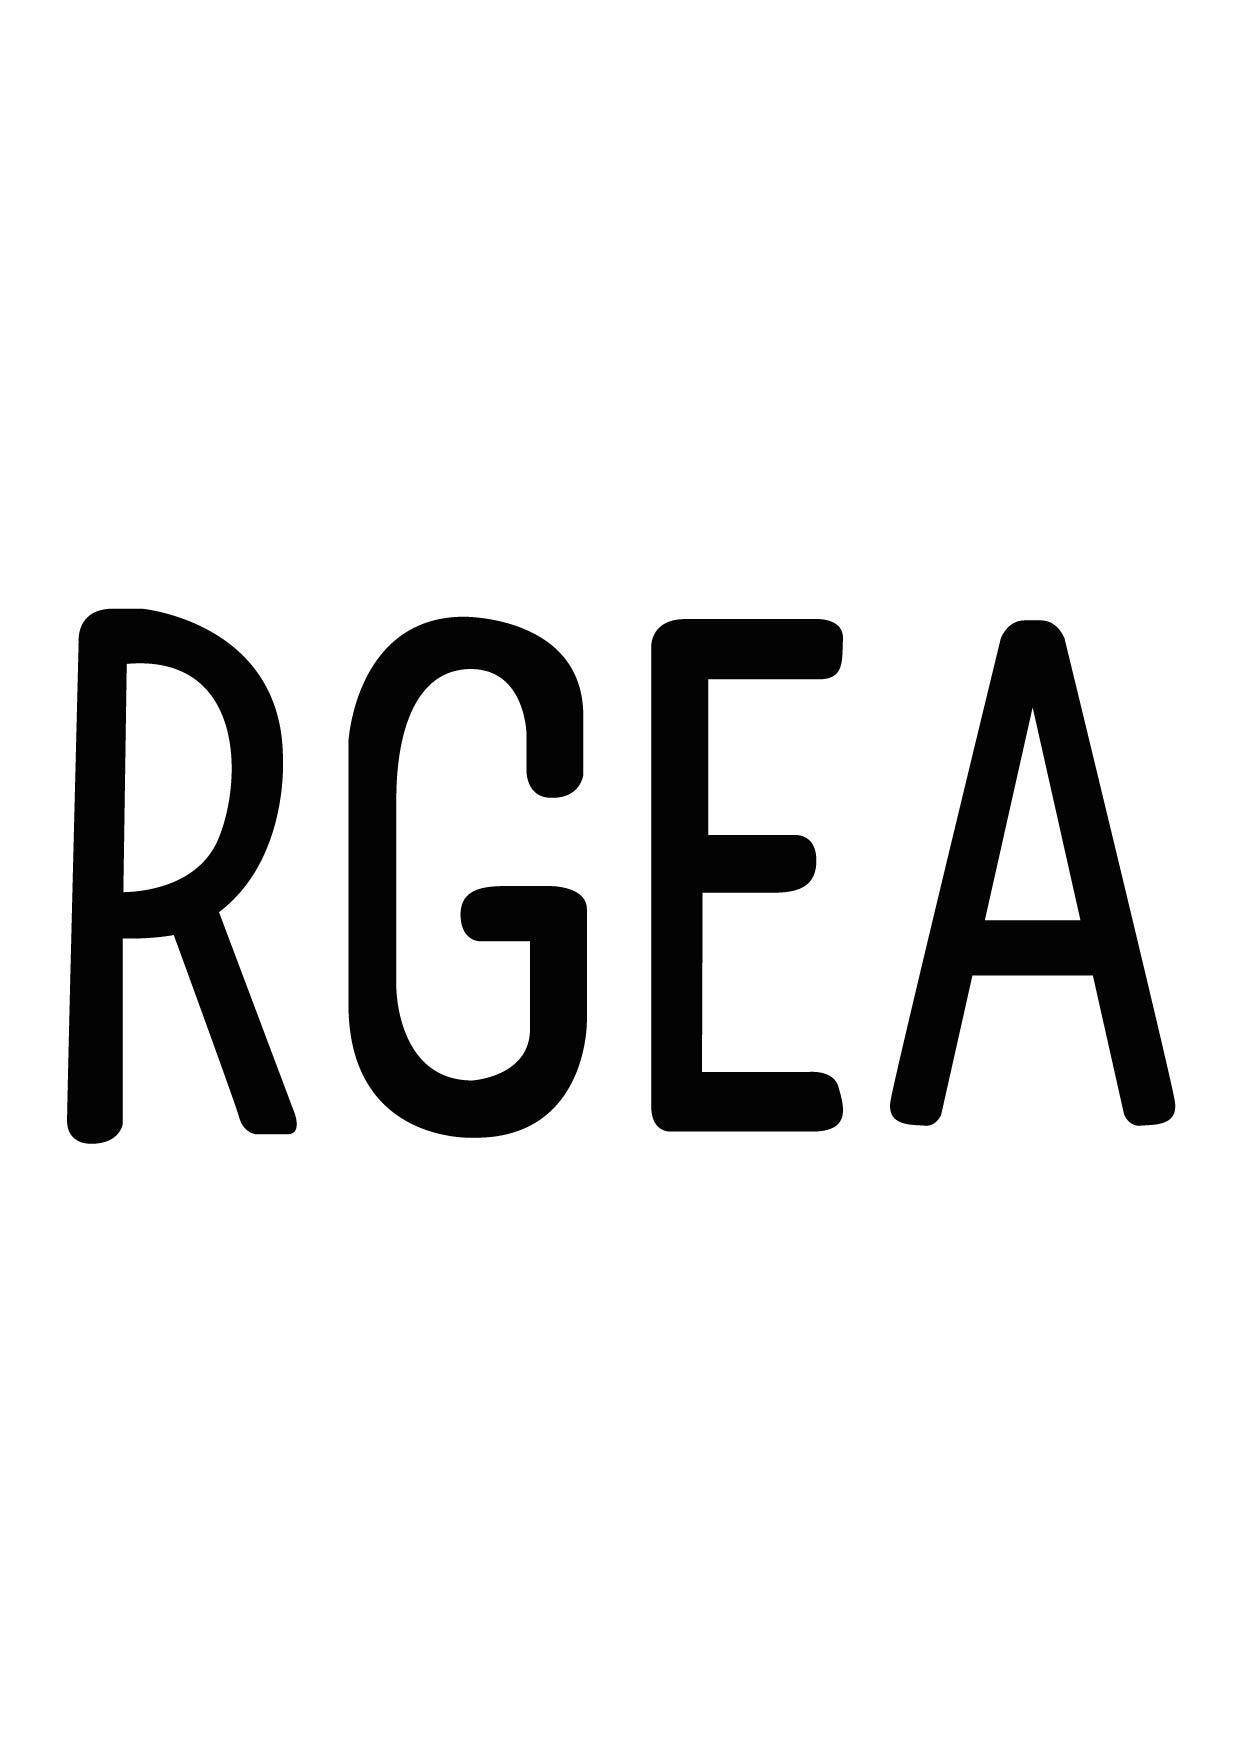 RGEA Font Please